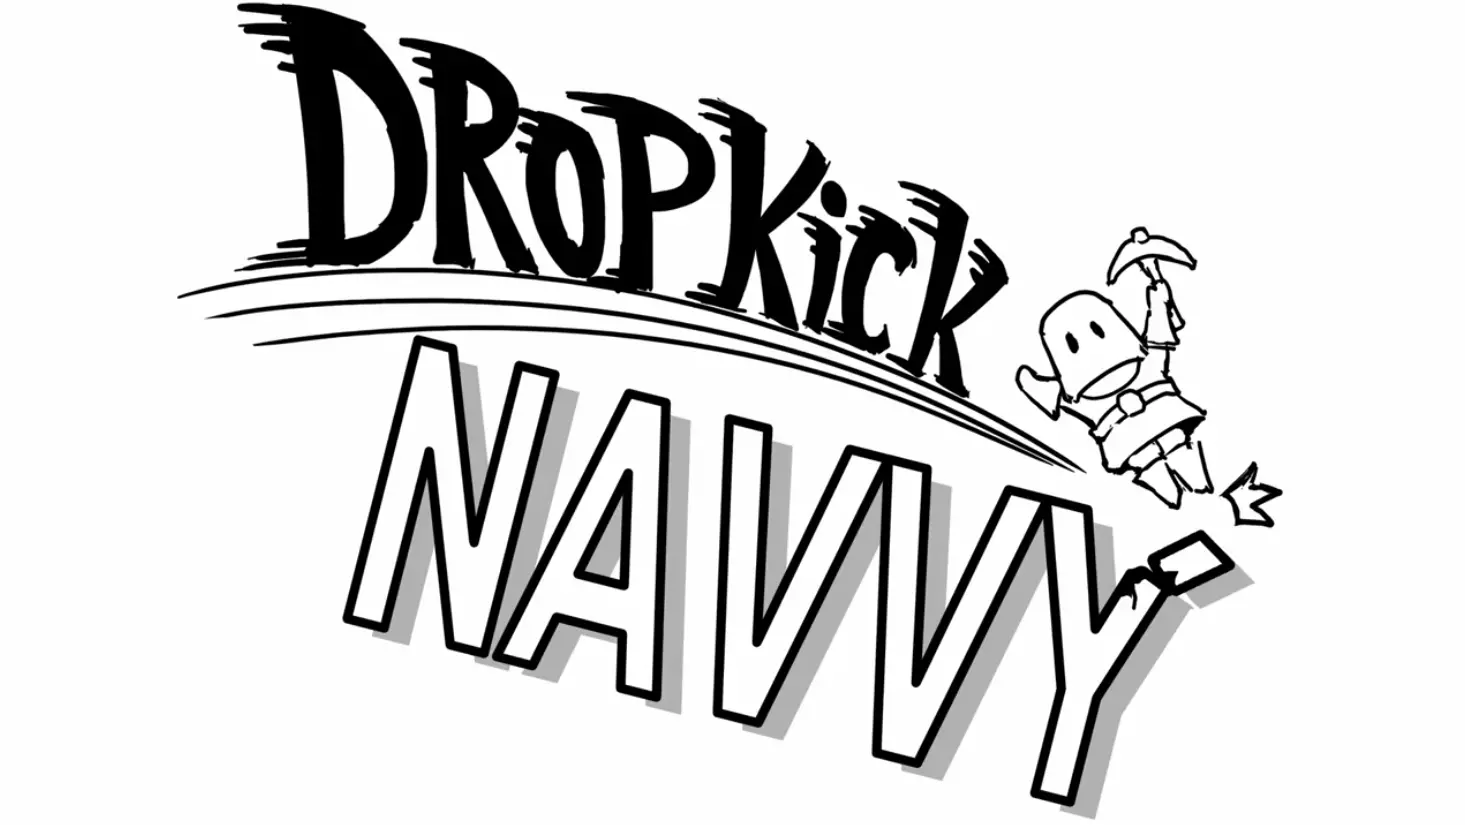 dropkicknavvy